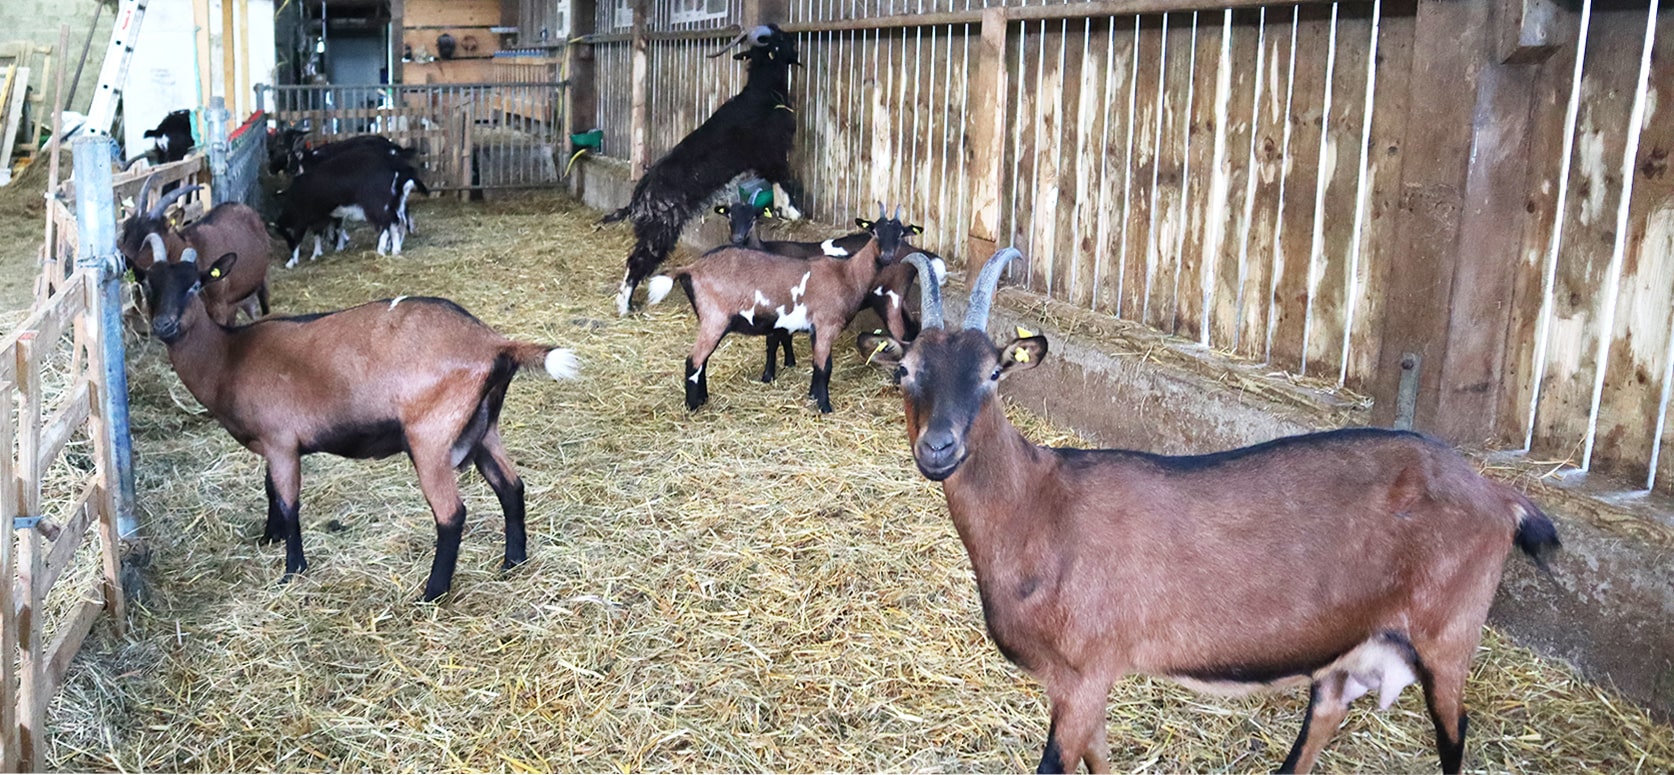 Le P'tit Fermier de Kervihan produits laitiers Locoal Mendon 56 élevage de chèvres